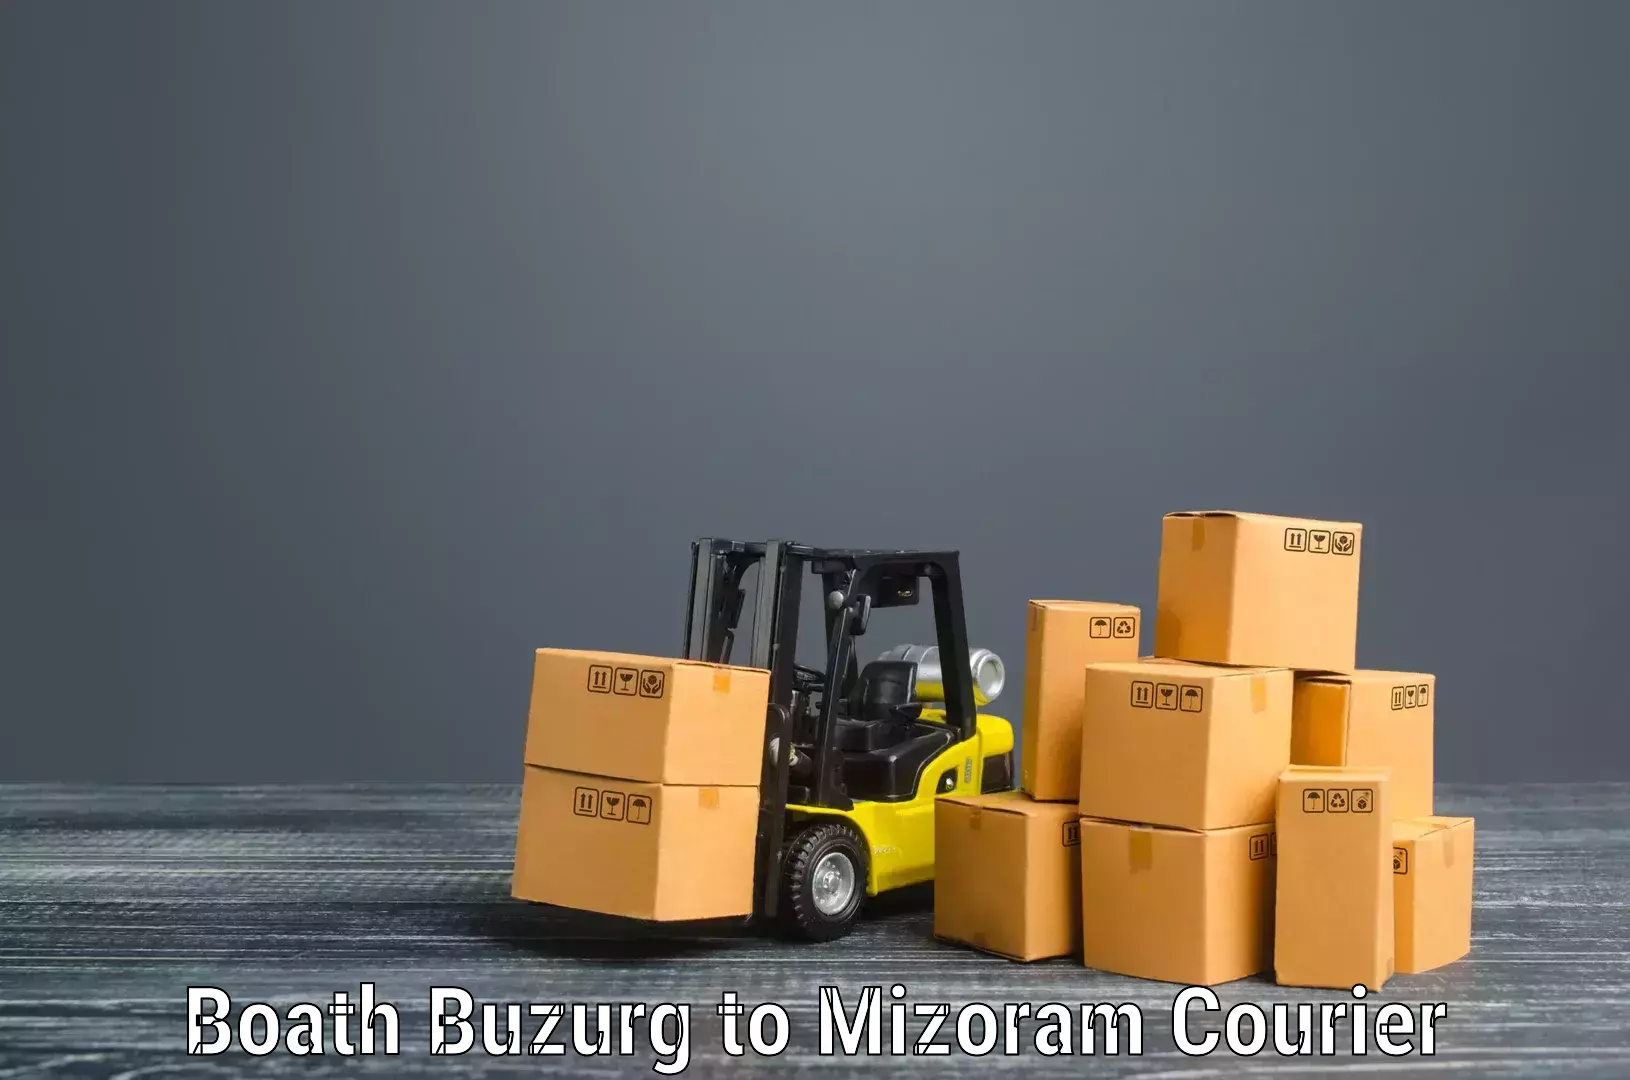 Furniture transport professionals Boath Buzurg to Mizoram